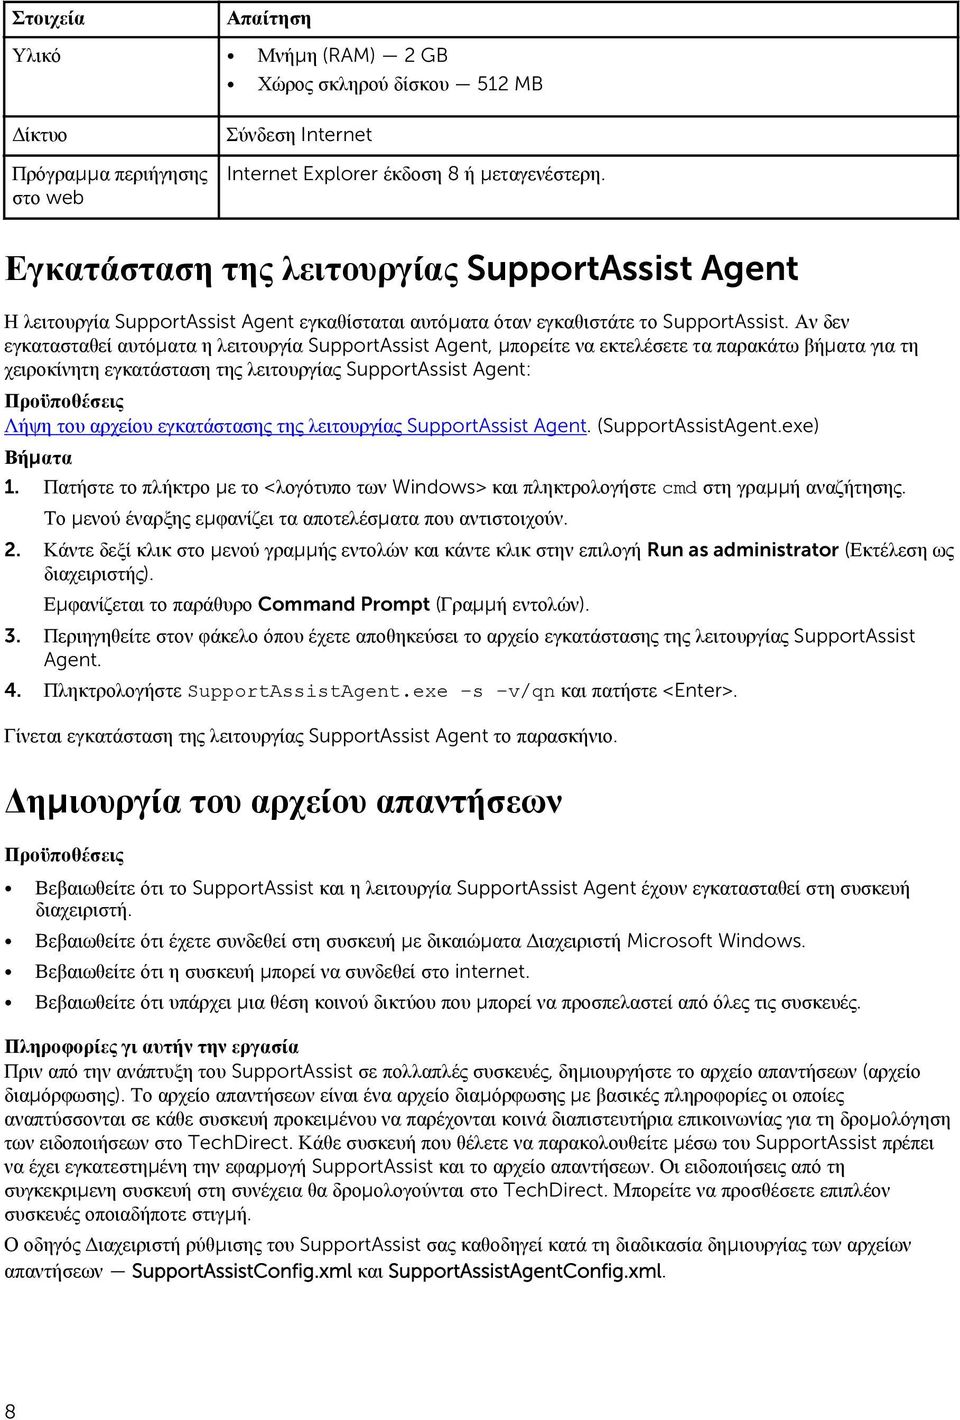 Αν δεν εγκατασταθεί αυτόματα η λειτουργία SupportAssist Agent, μπορείτε να εκτελέσετε τα παρακάτω βήματα για τη χειροκίνητη εγκατάσταση της λειτουργίας SupportAssist Agent: Προϋποθέσεις Λήψη του